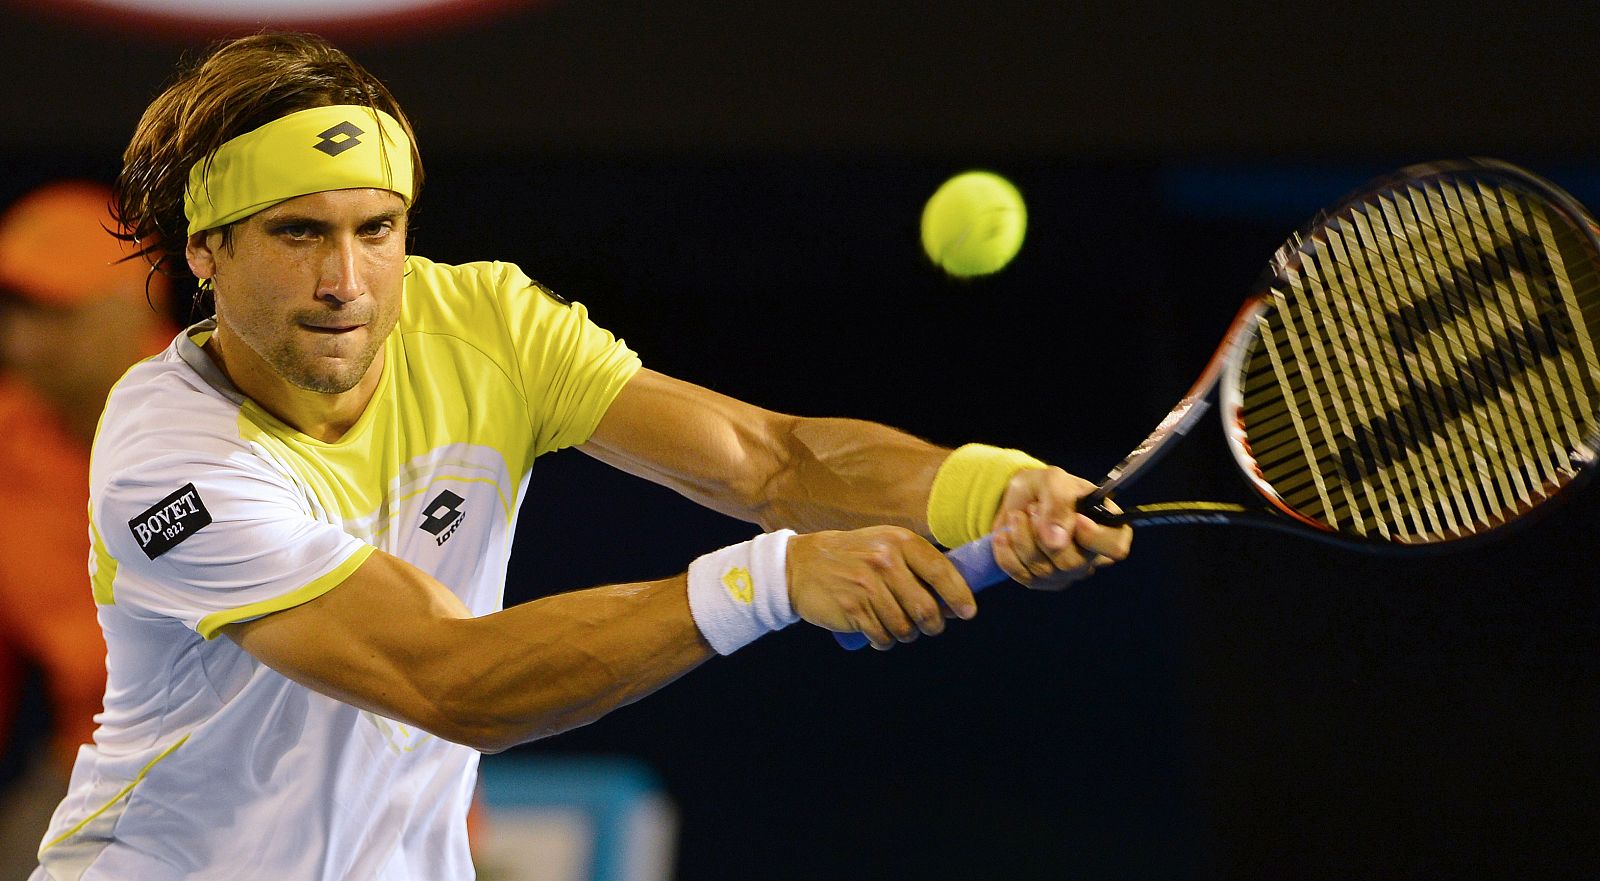 David Ferrer golpea una bola en el partido contra Marcos Baghdatis en el Open de Australia